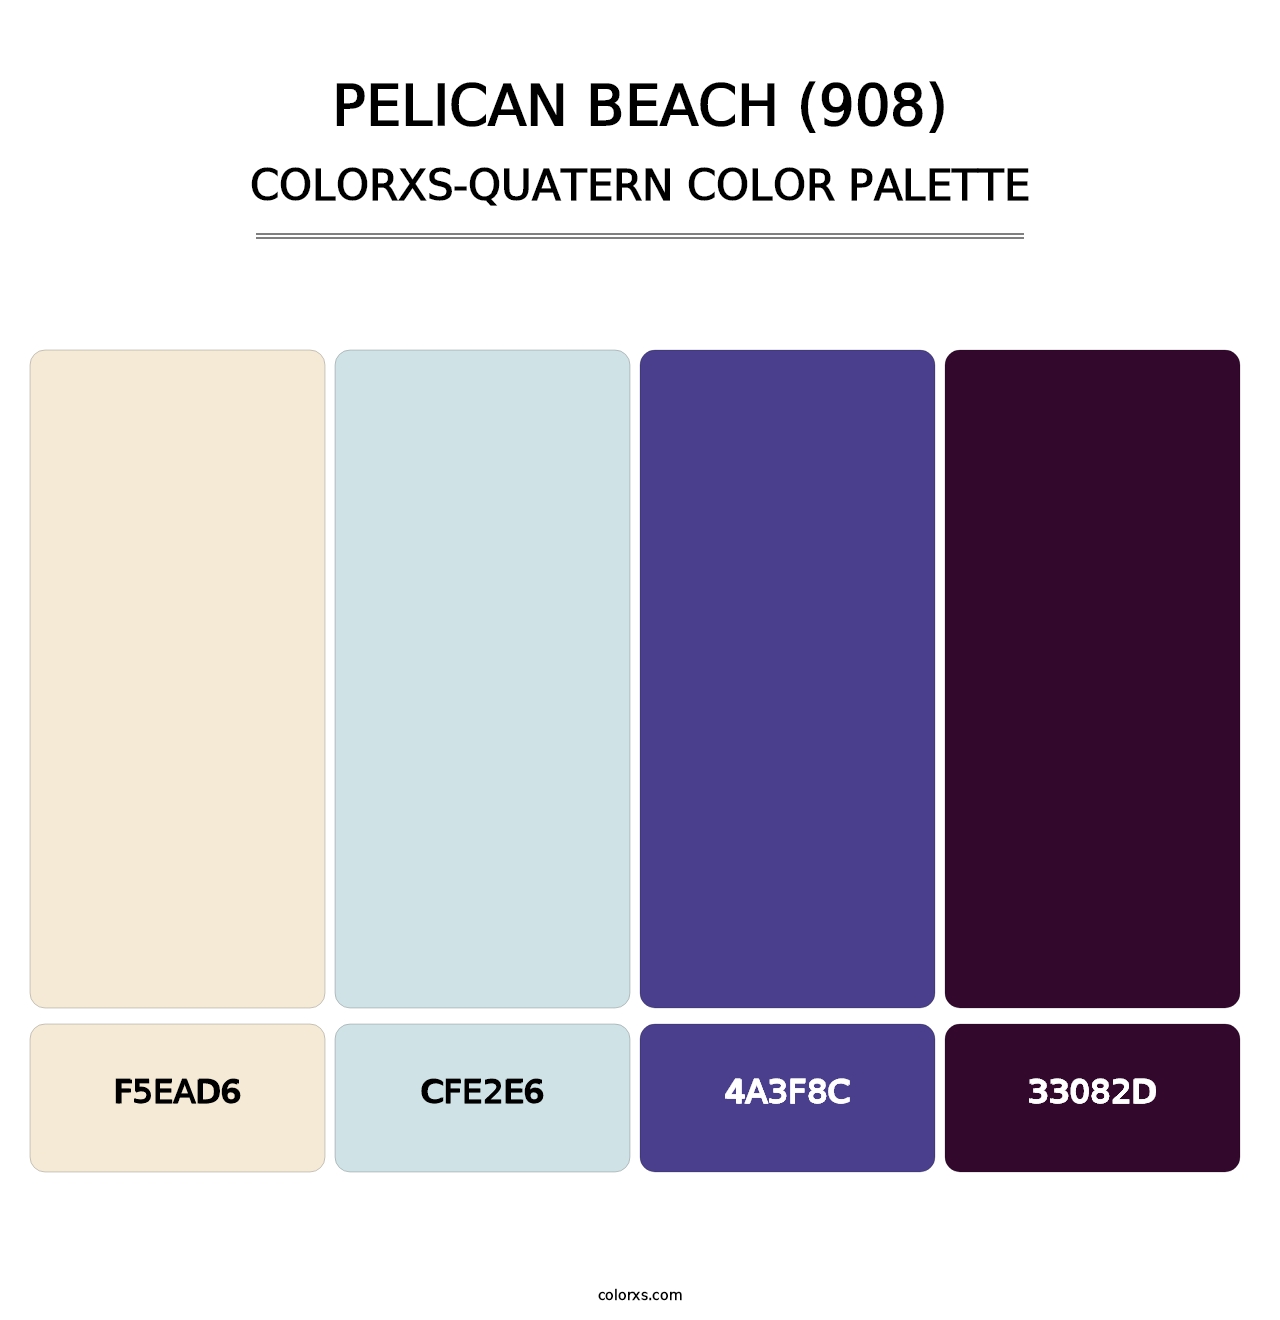 Pelican Beach (908) - Colorxs Quatern Palette